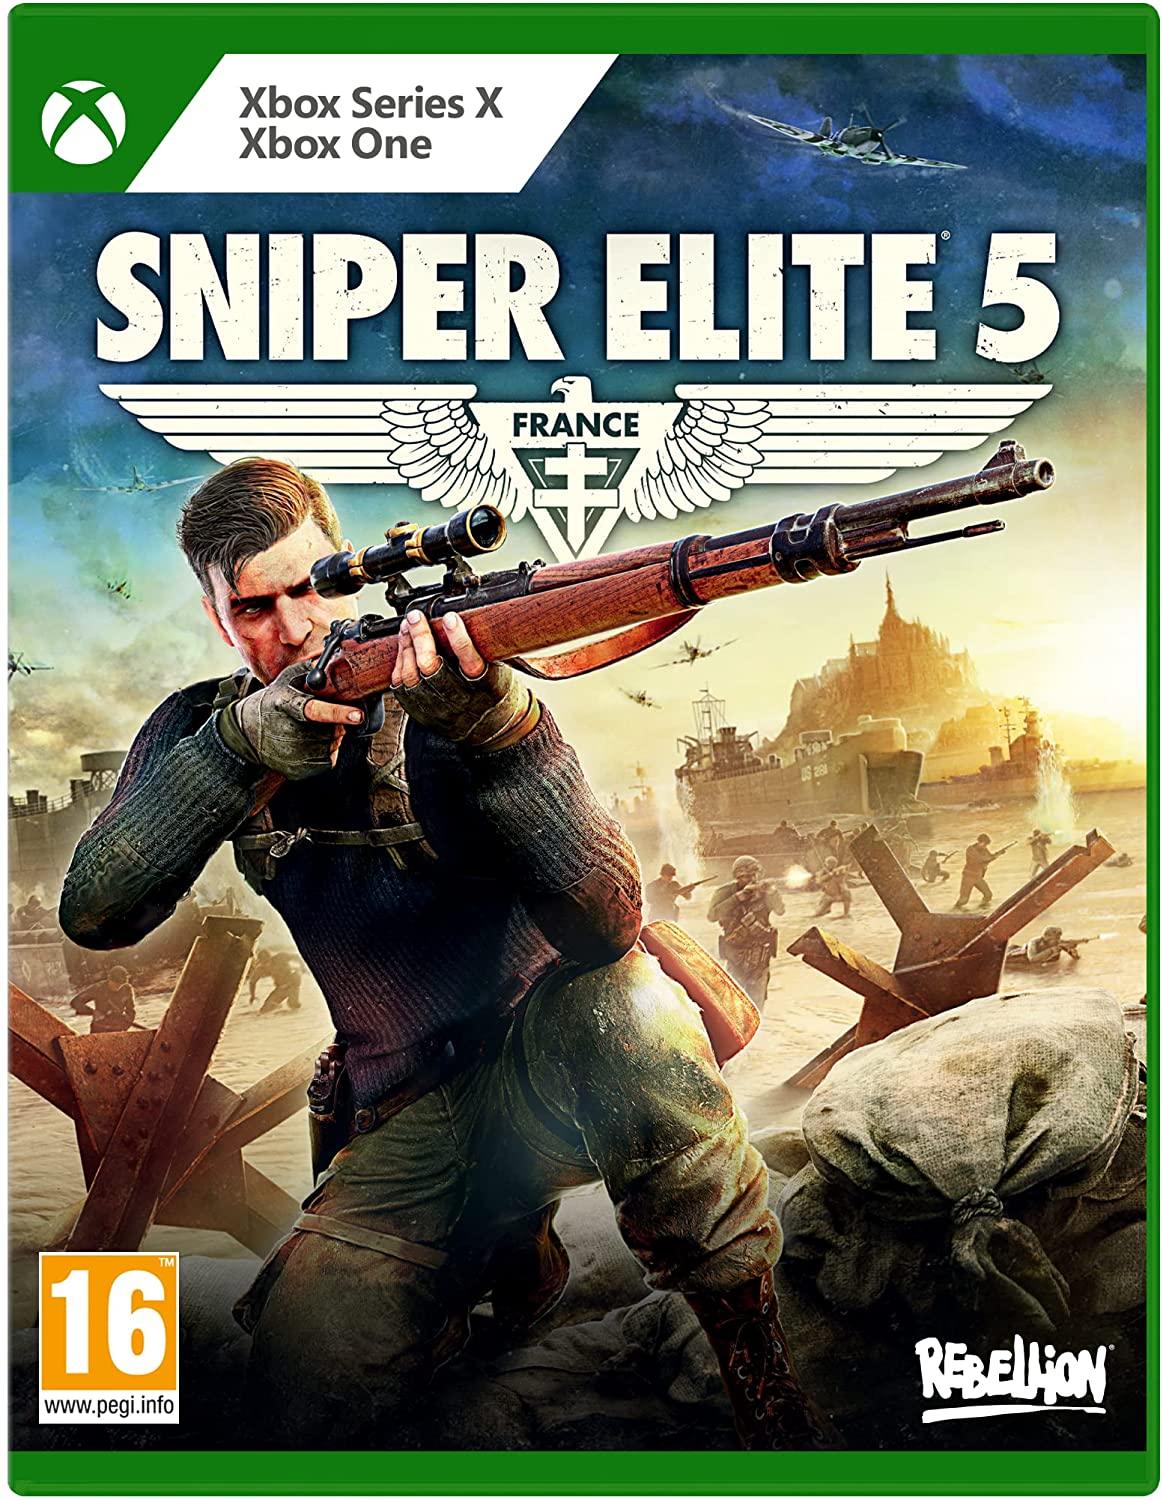 Sniper Elite 5 (Xbox Series X) (Xbox One) - GameStore.mt | Powered by Flutisat